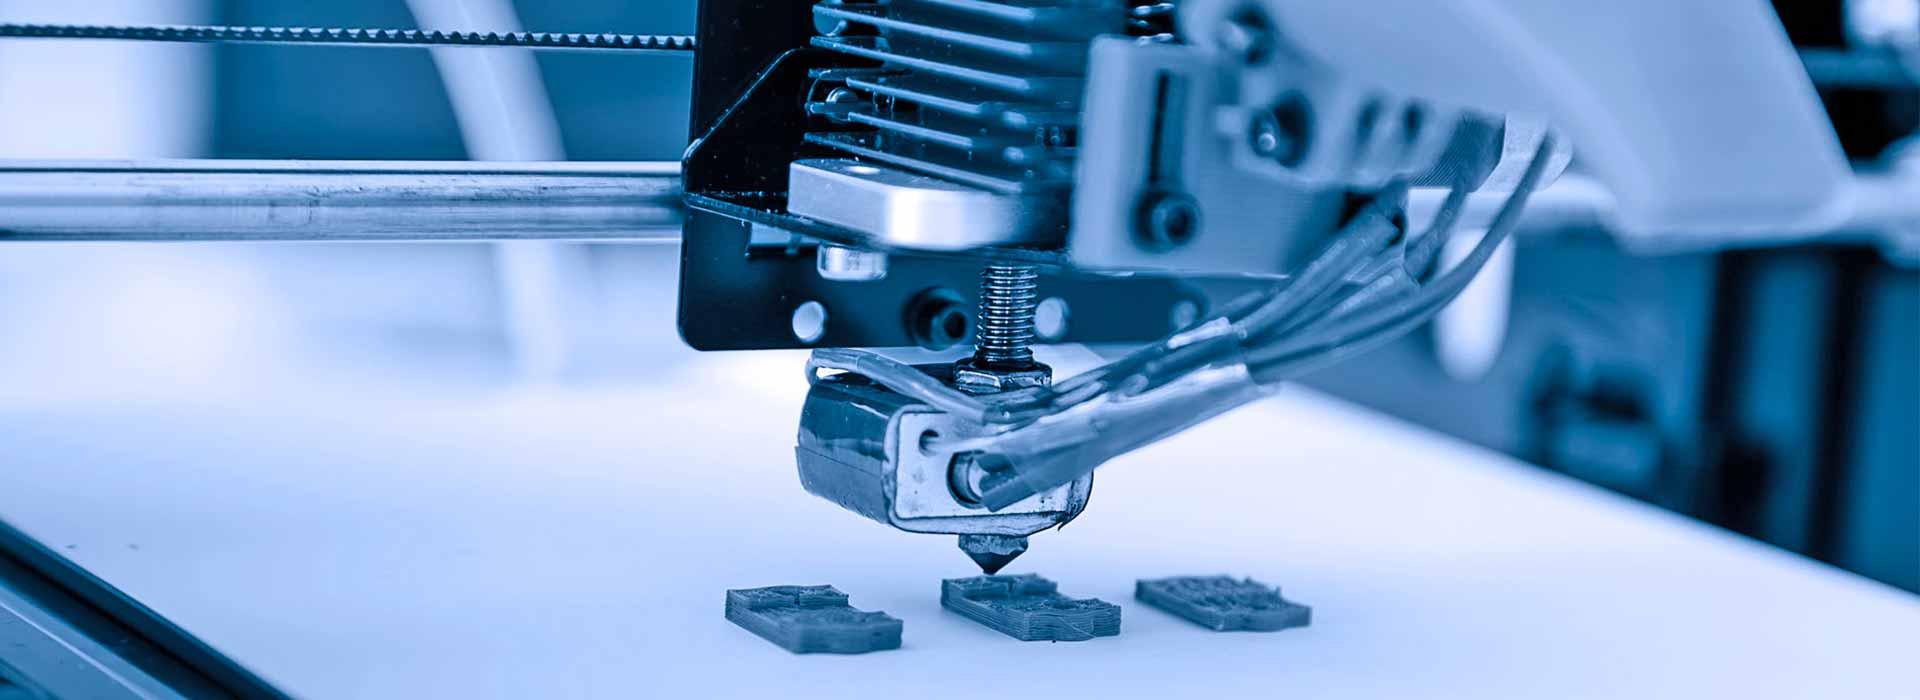 Gruppi automobilistici: il futuro è la stampa 3D industriale